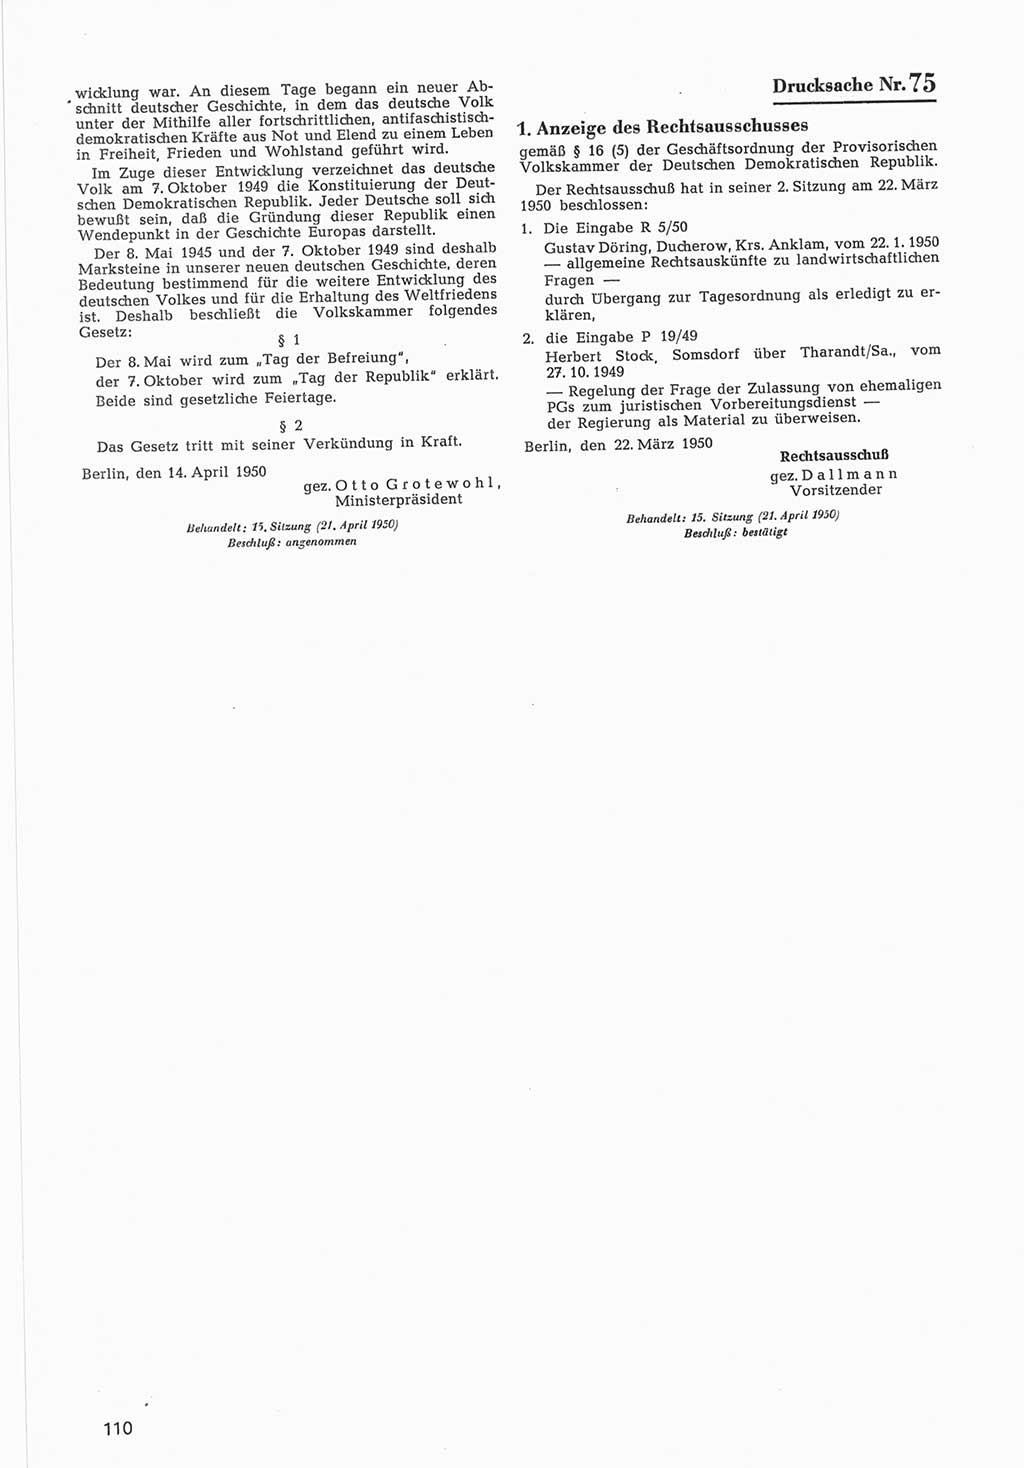 Provisorische Volkskammer (VK) der Deutschen Demokratischen Republik (DDR) 1949-1950, Dokument 712 (Prov. VK DDR 1949-1950, Dok. 712)